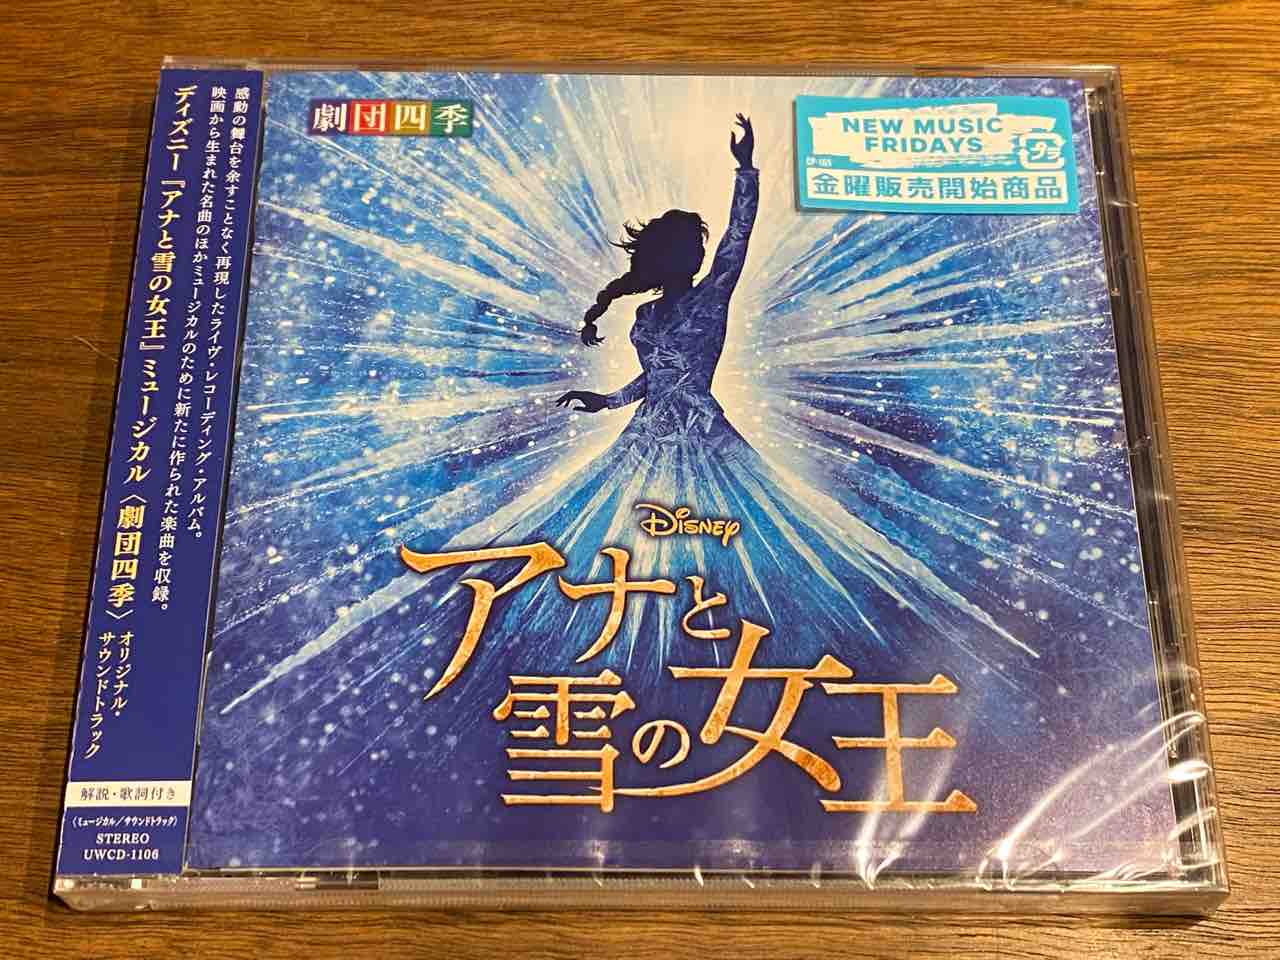 劇団四季アナと雪の女王 CD - 芸能